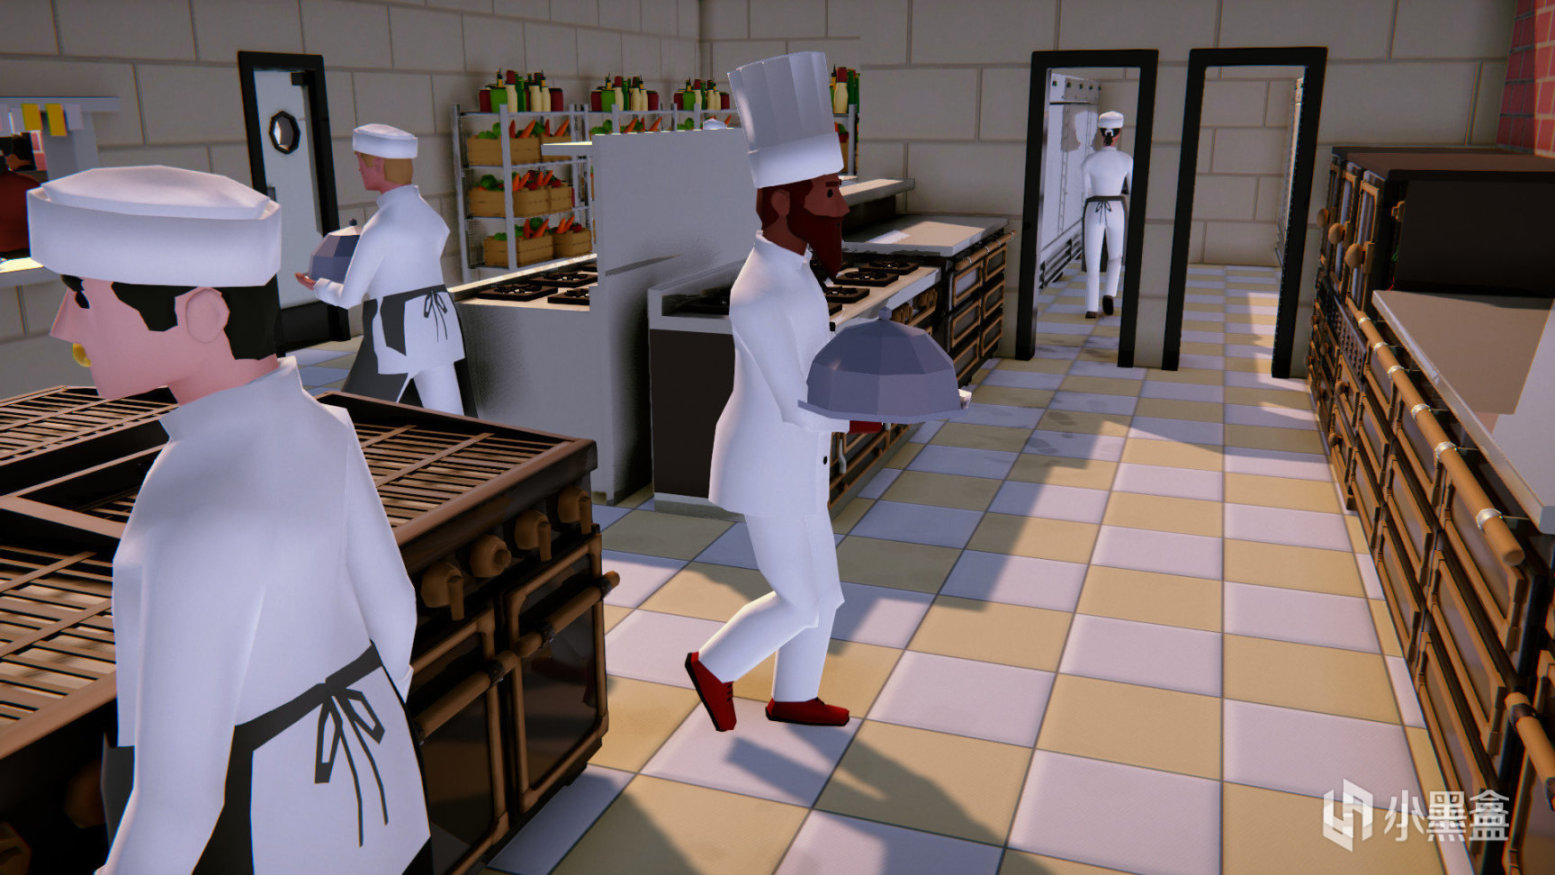 【PC游戏】Epic周限免《厨师长模拟器》下周为《小兵大战》-第2张